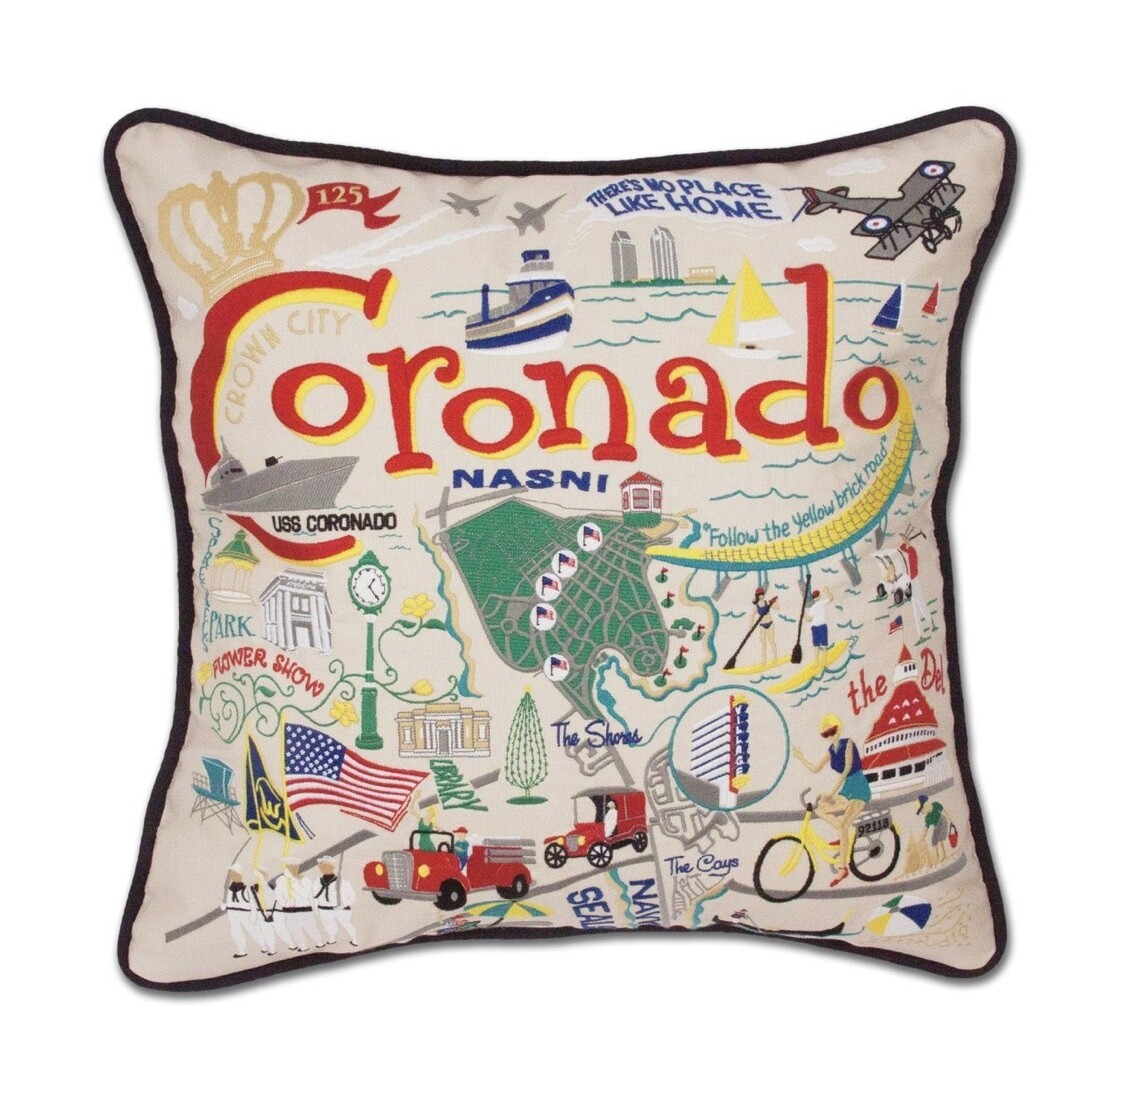 Coronado Pillow